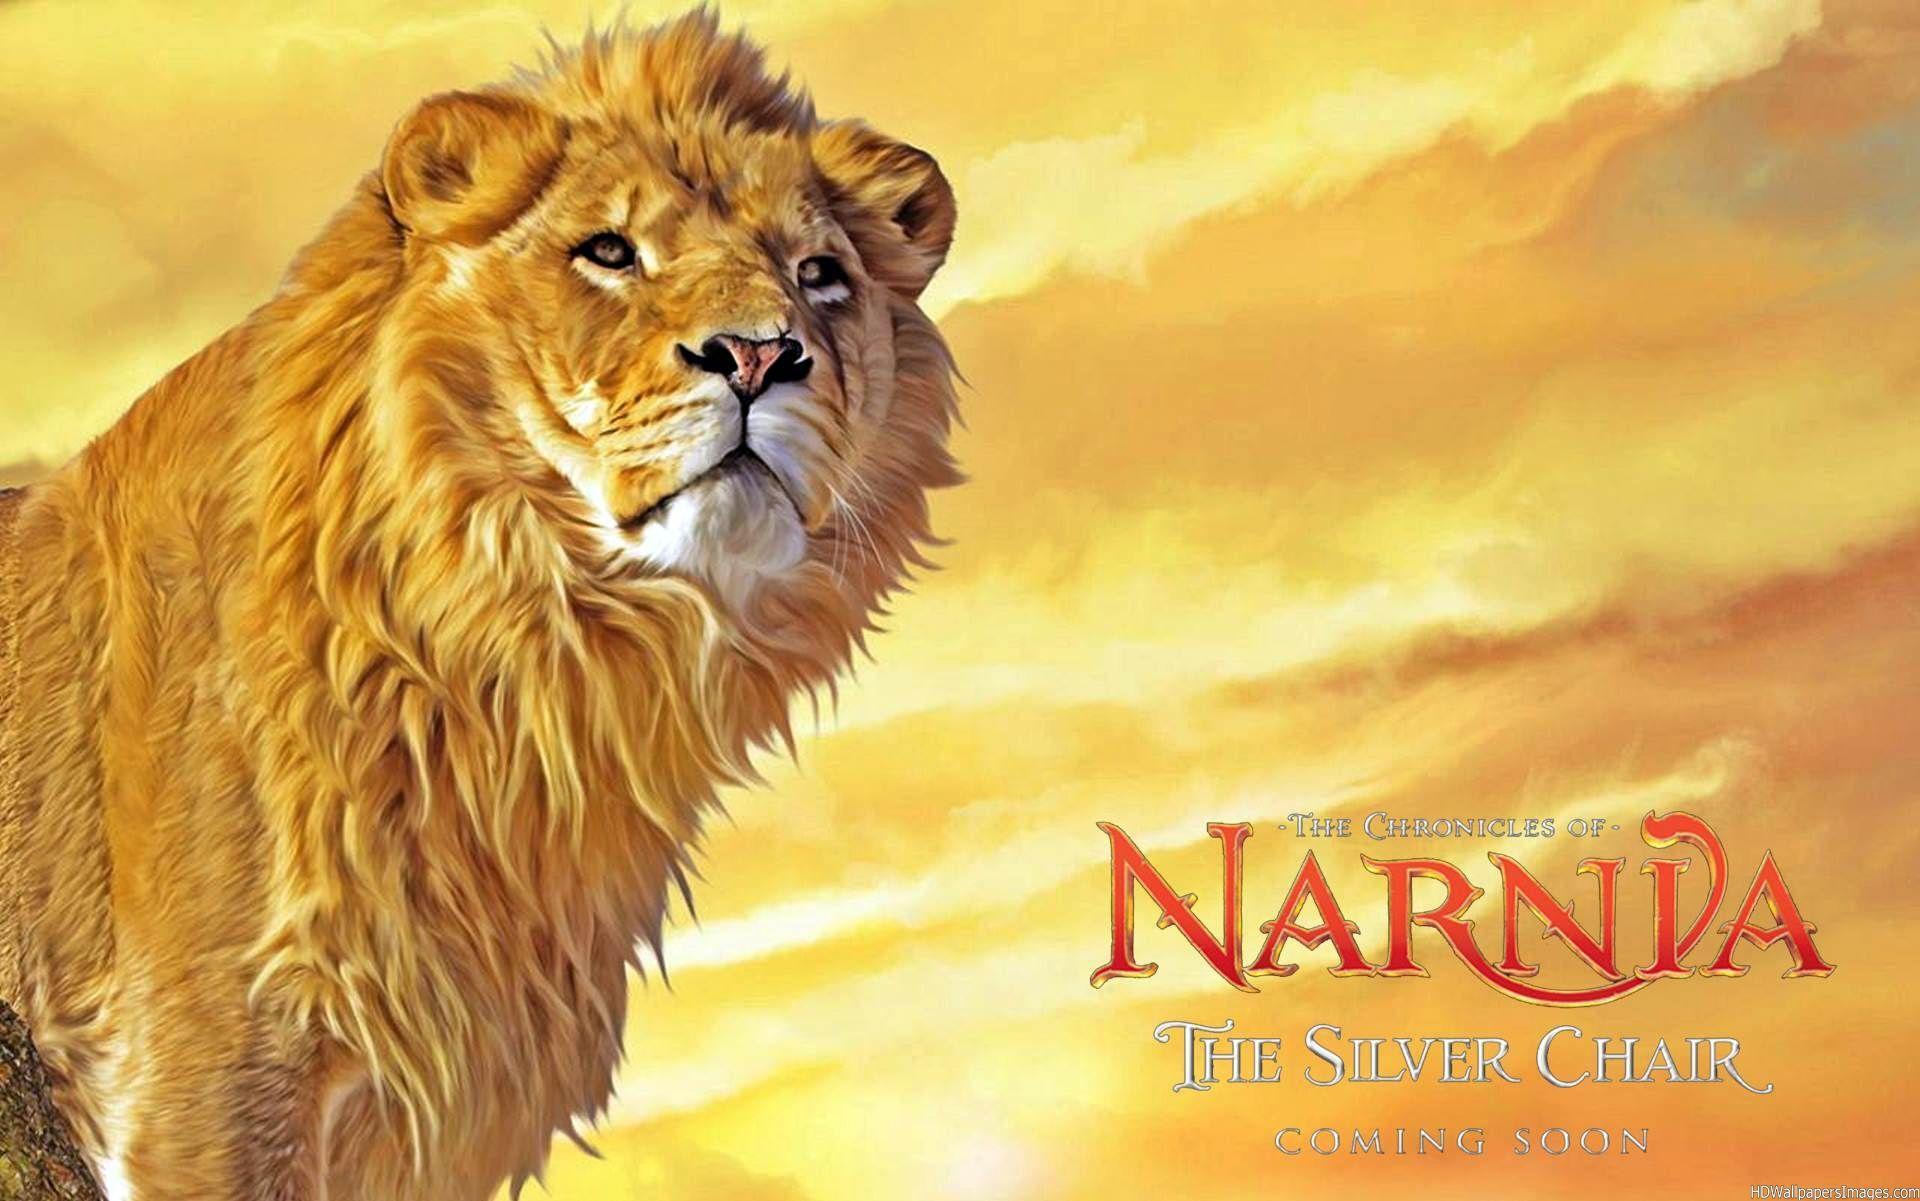 Aslan Narnia Lion Hd Wallpaper for Desktop and Mobiles Retina iPad